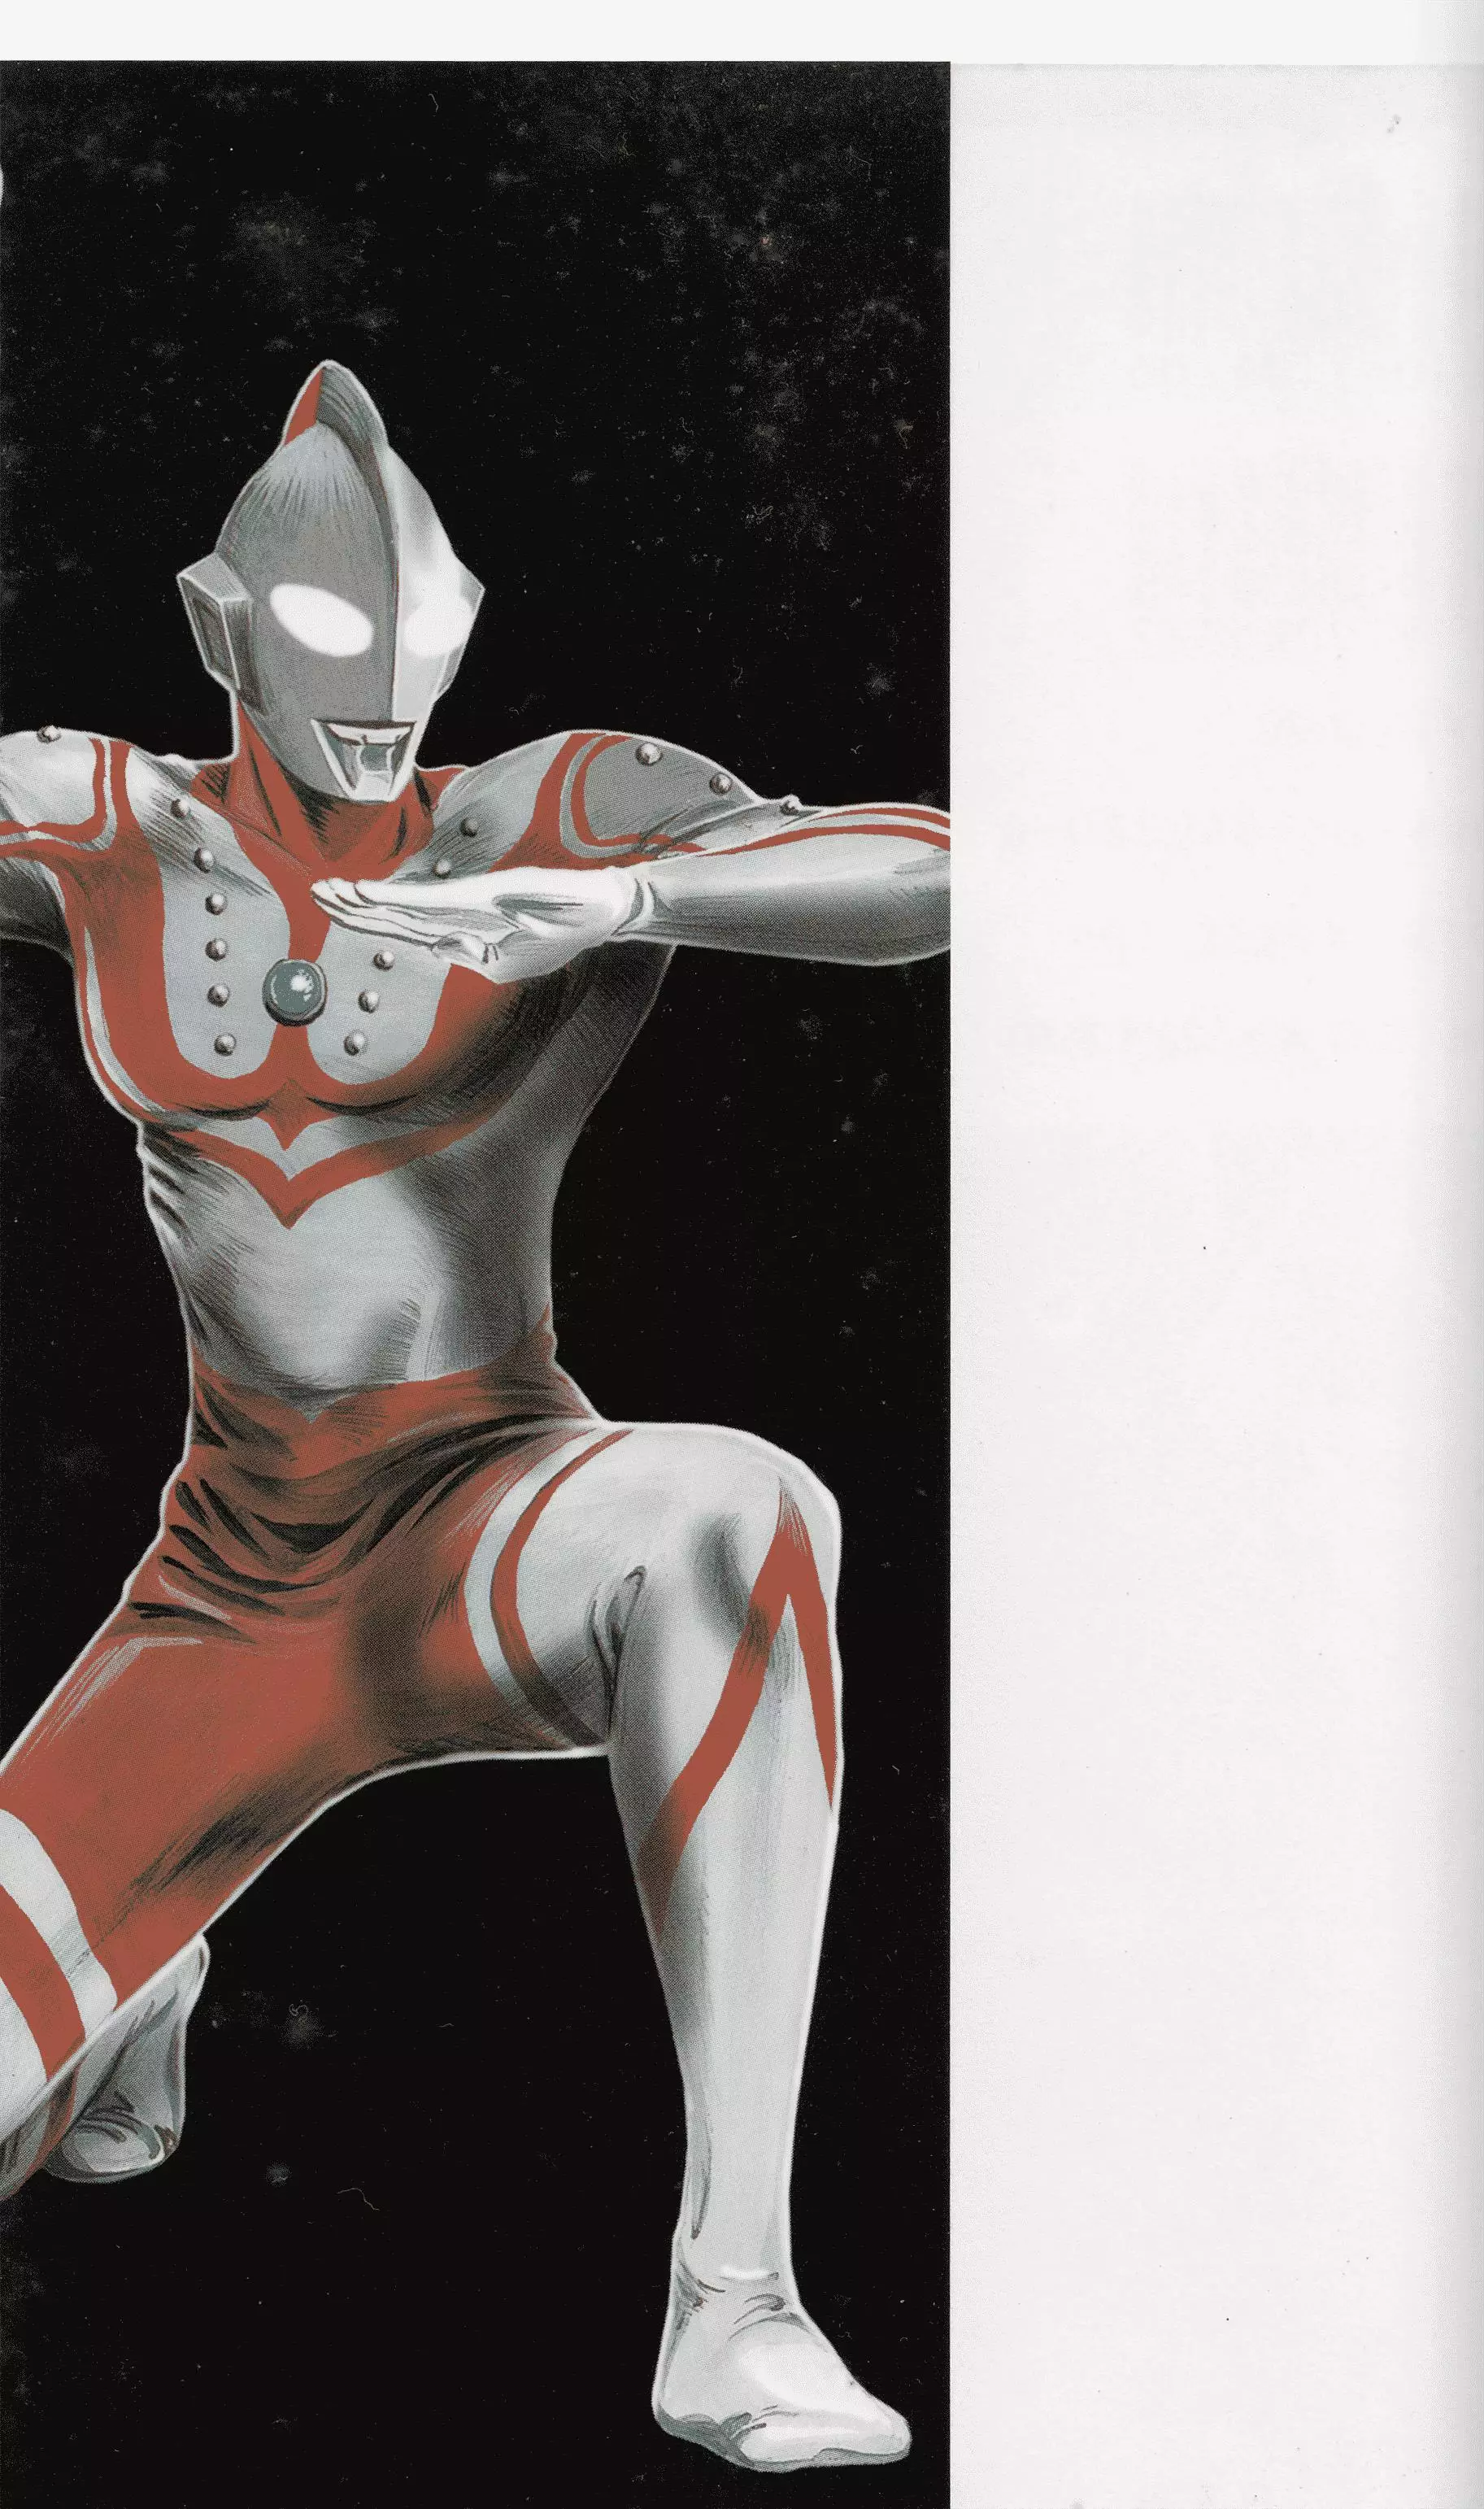 Ultraman Story 0 - 1 page 2-27c8cbd3